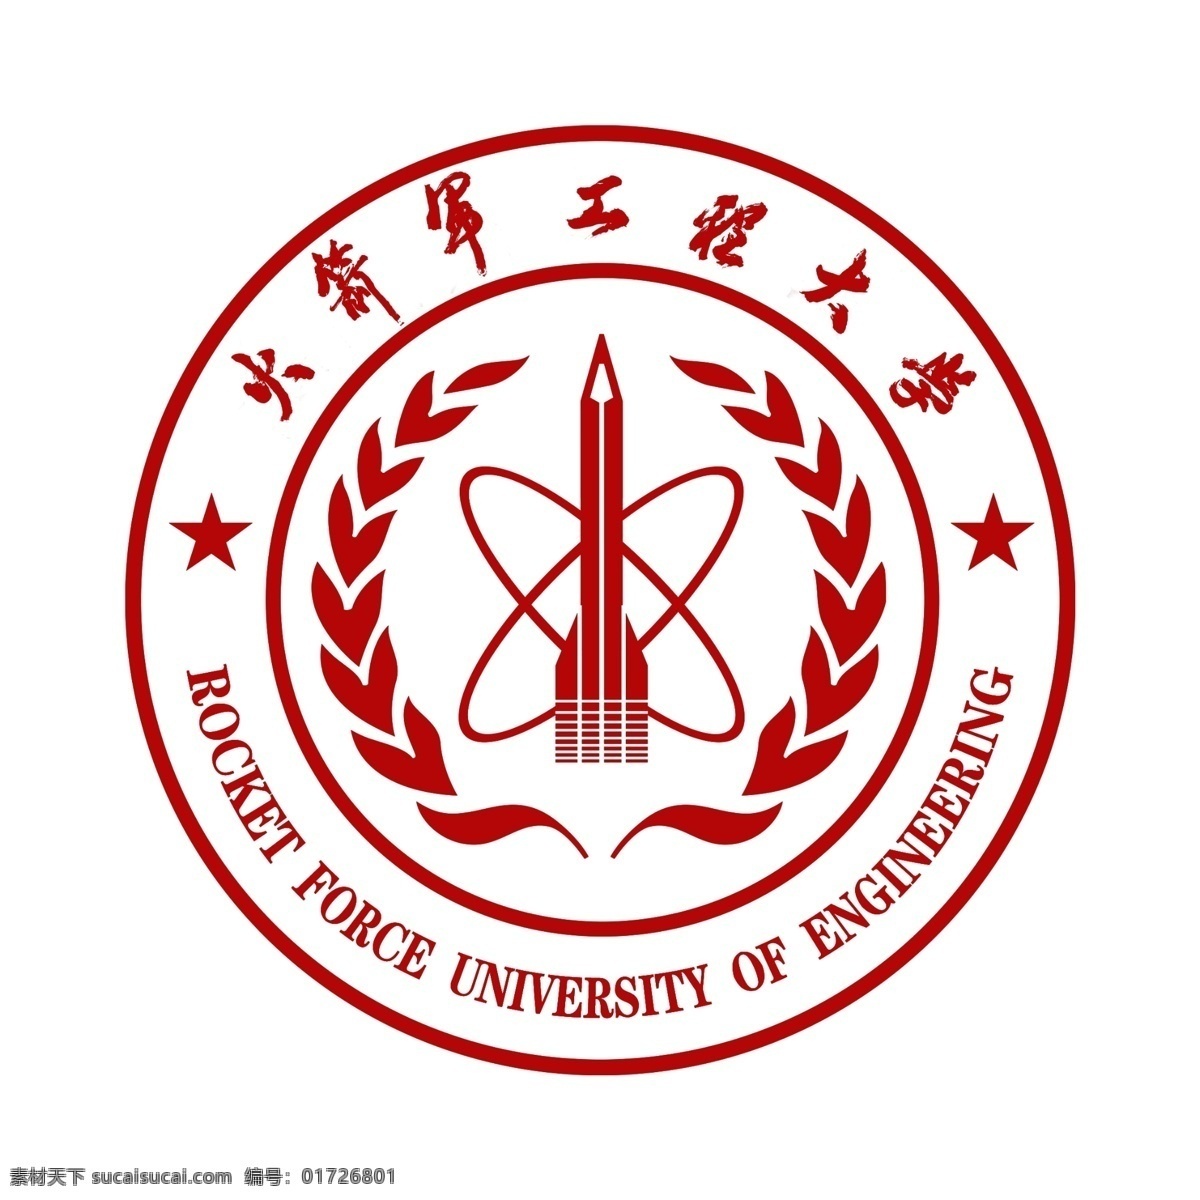 火箭 军 工程 大学 logo 学院 工程大学 logo设计